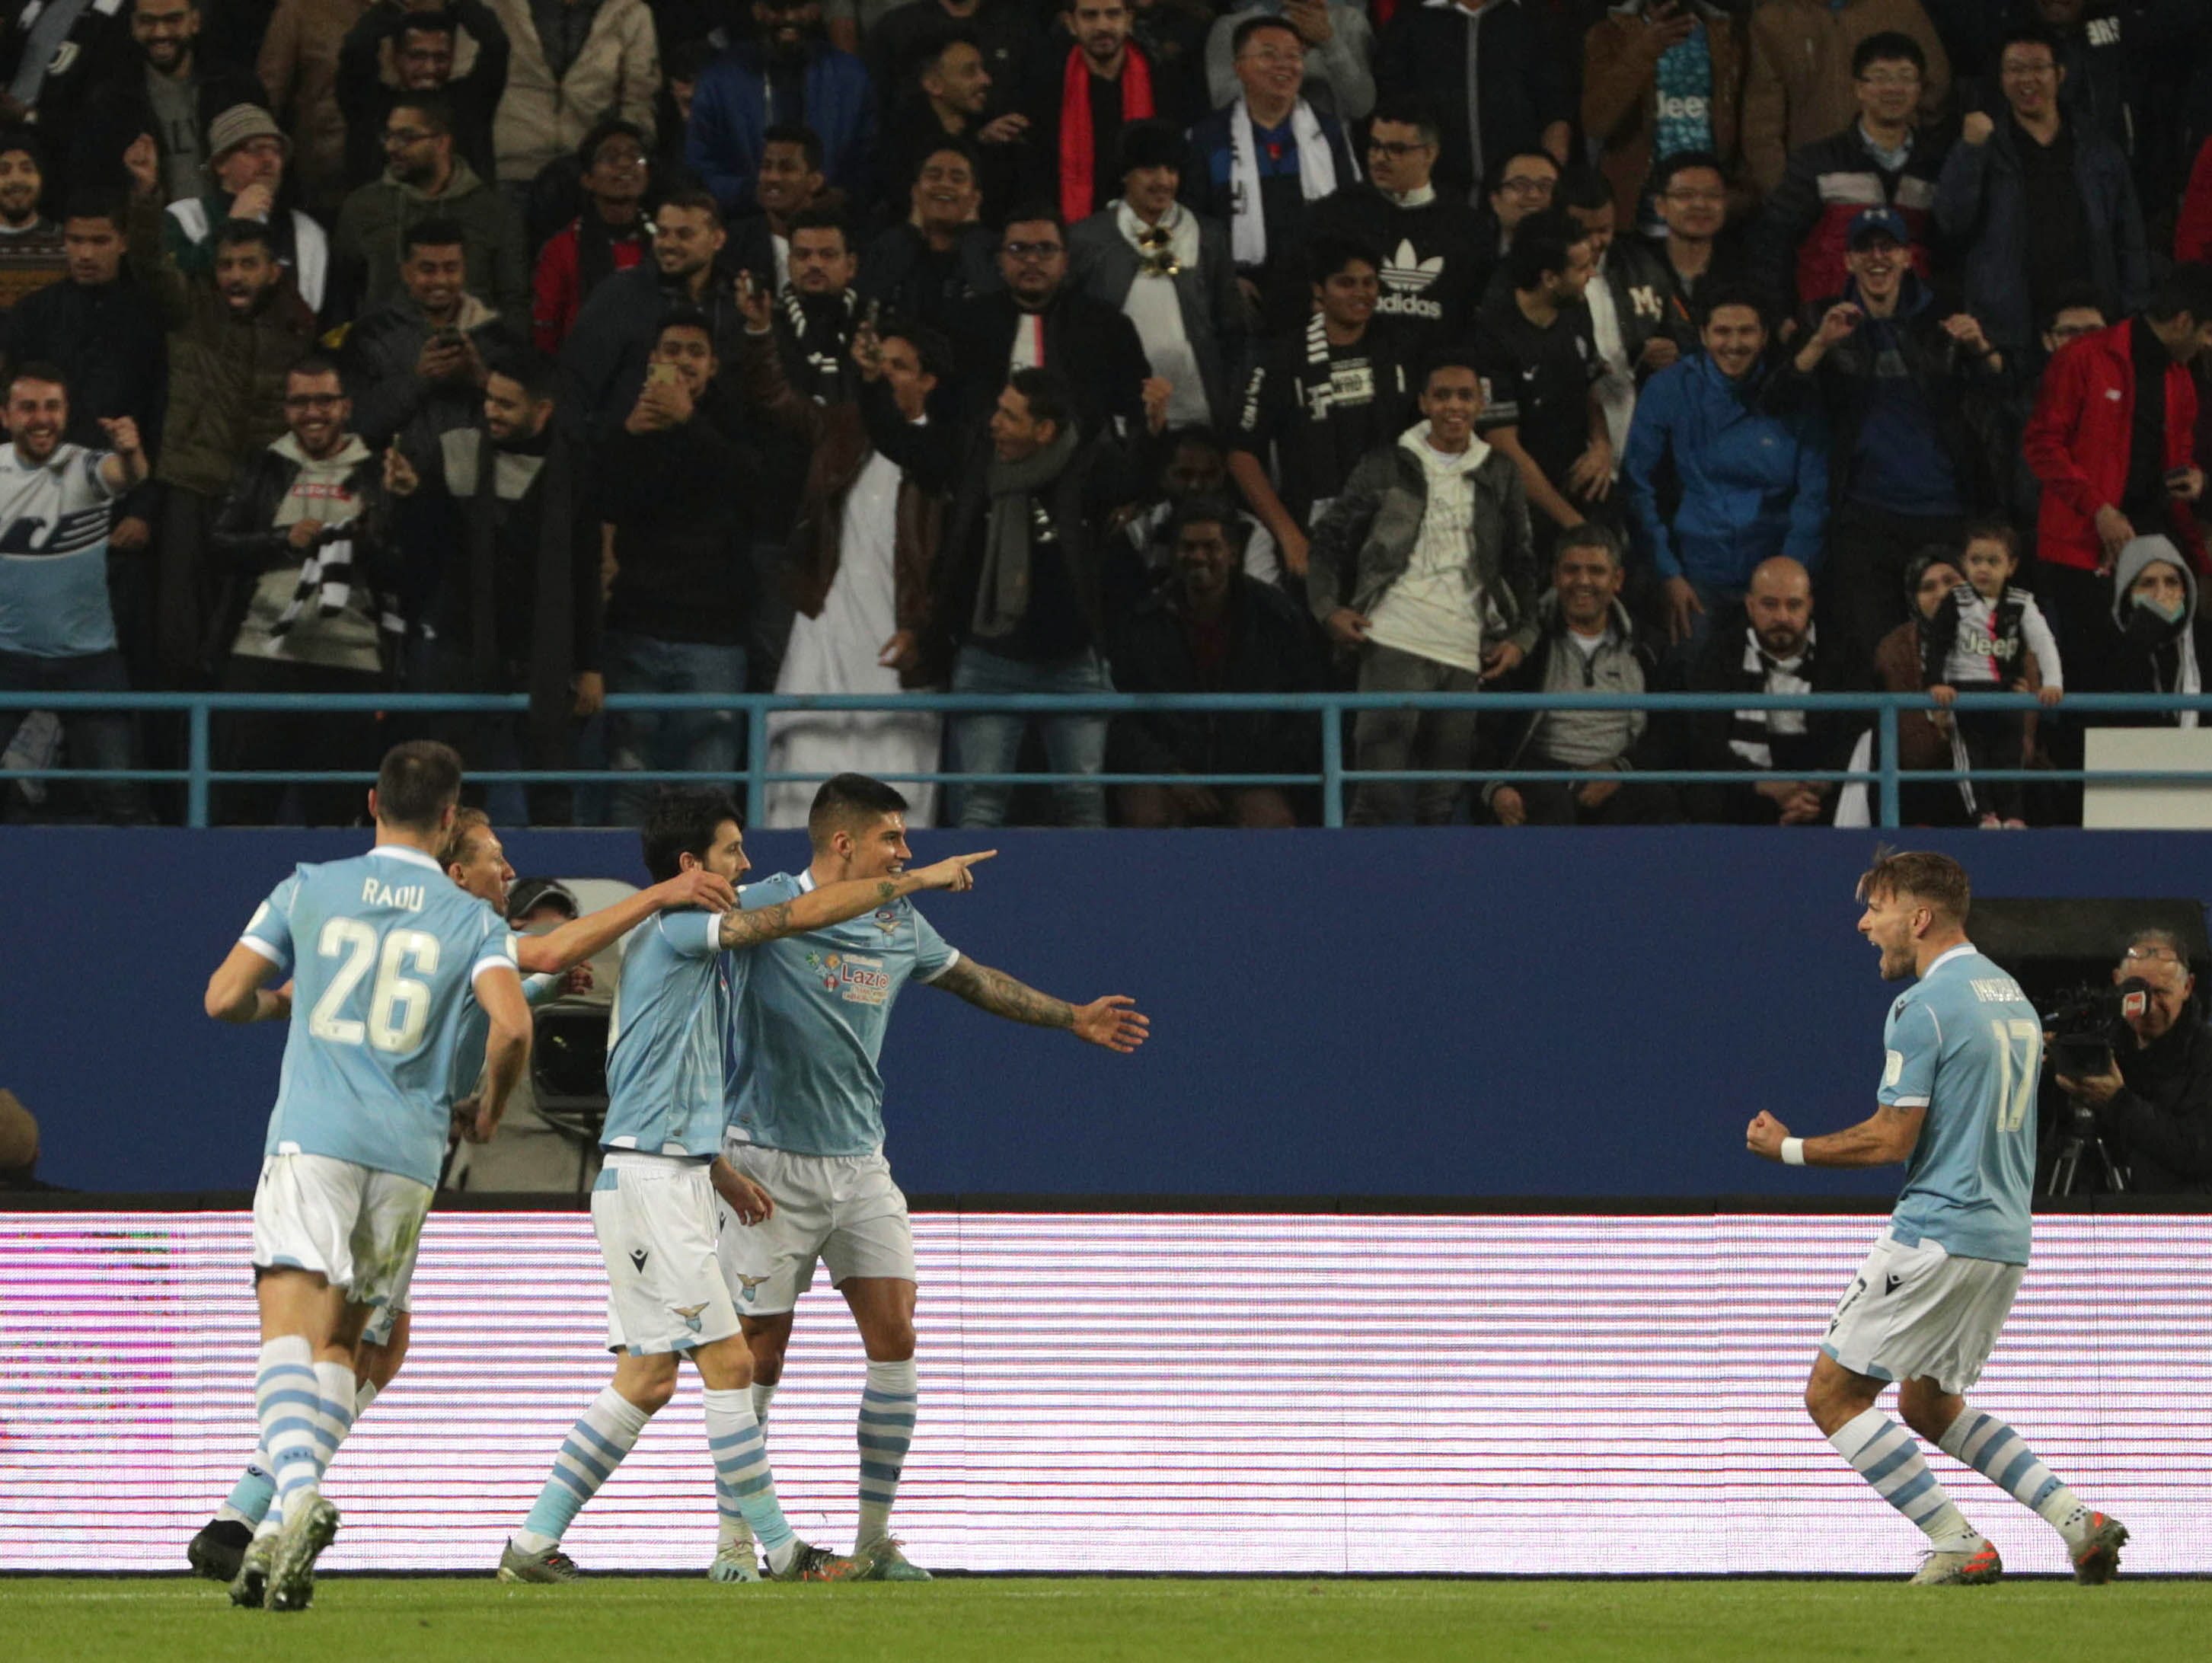 La Lazio hunde a la Juventus y conquista su quinta Supercopa (1-3)